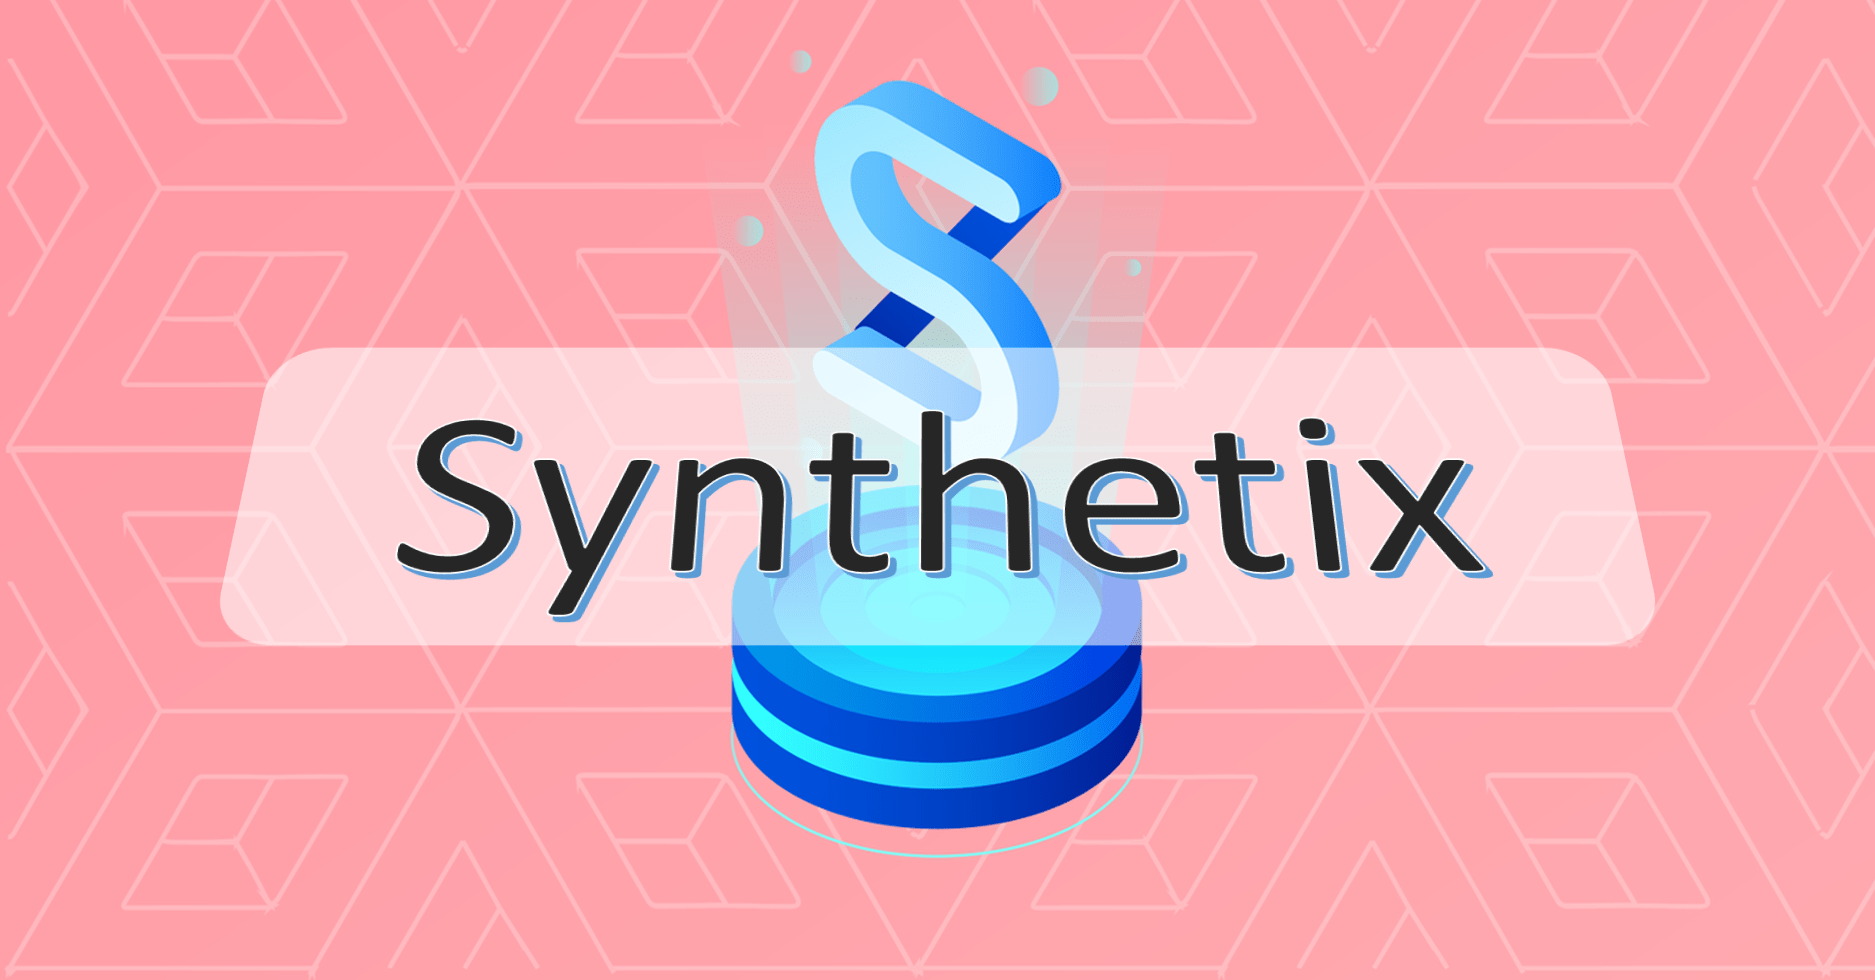 synthetix là gì